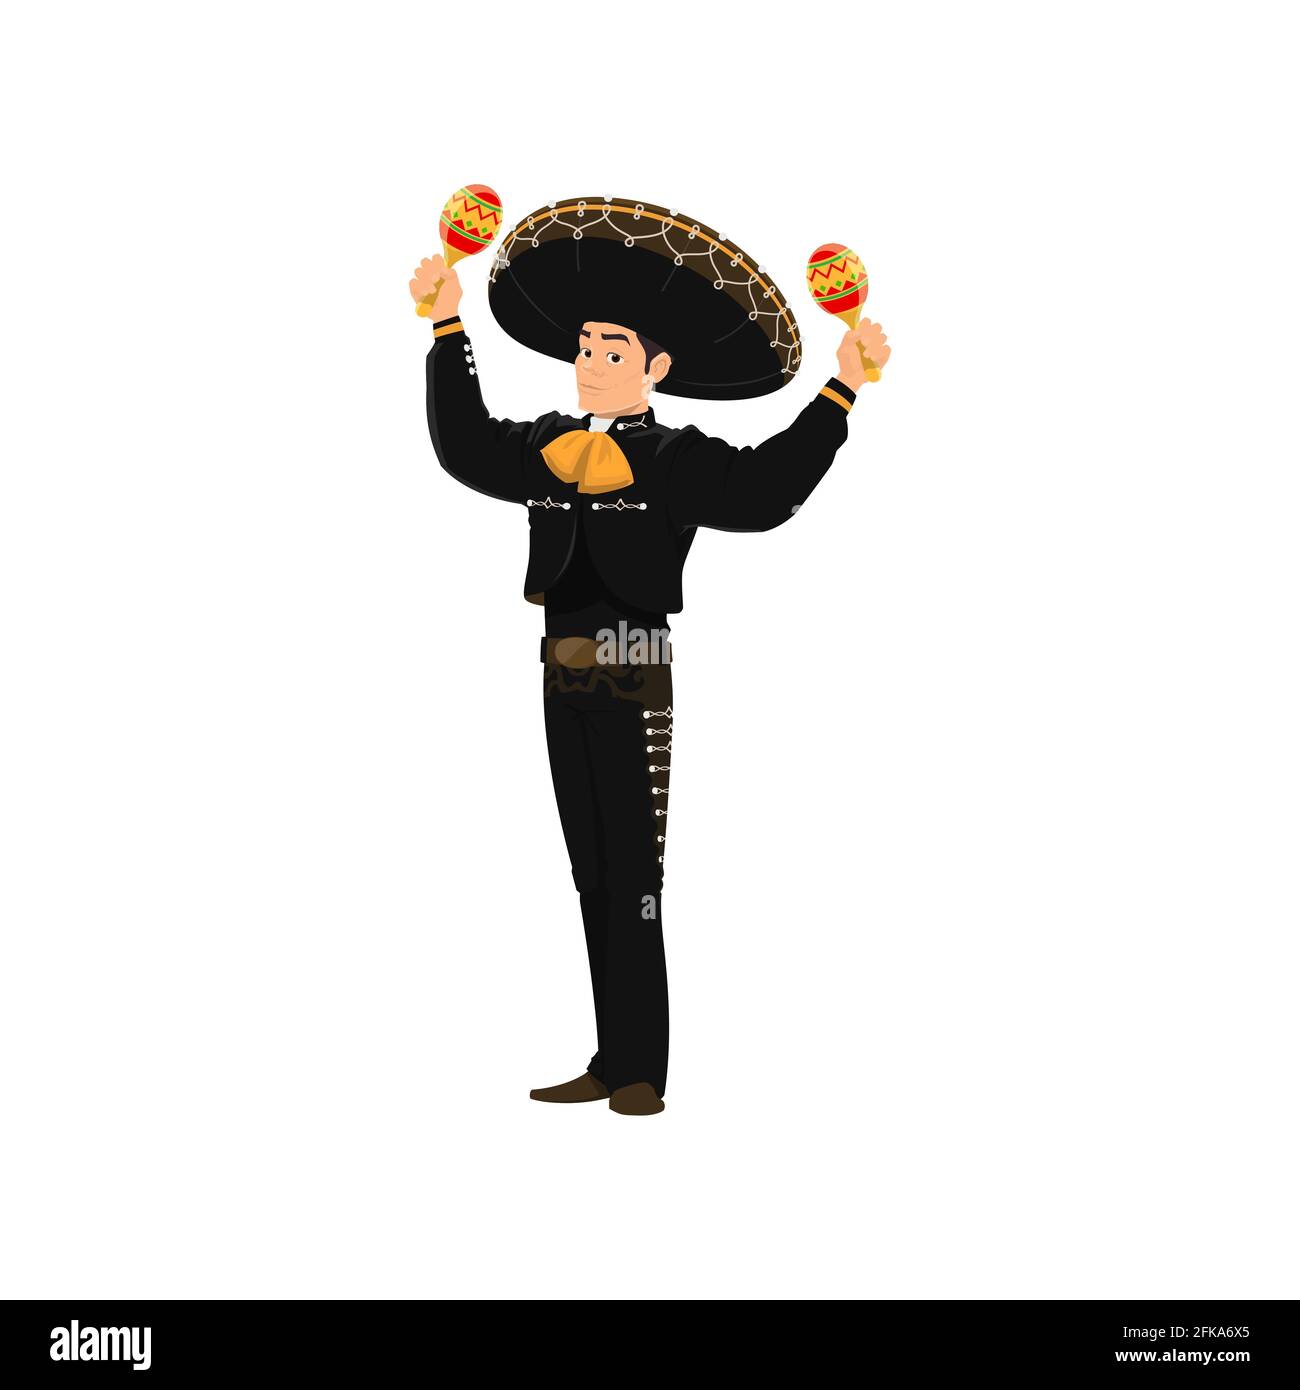 Der spanische Straßenbandspieler Mariachi spielt auf einer isolierten Zeichentrickfigur der Maracas. Vector Performer mit Maracas Musikinstrumenten, Mariachi-Spieler in Stock Vektor